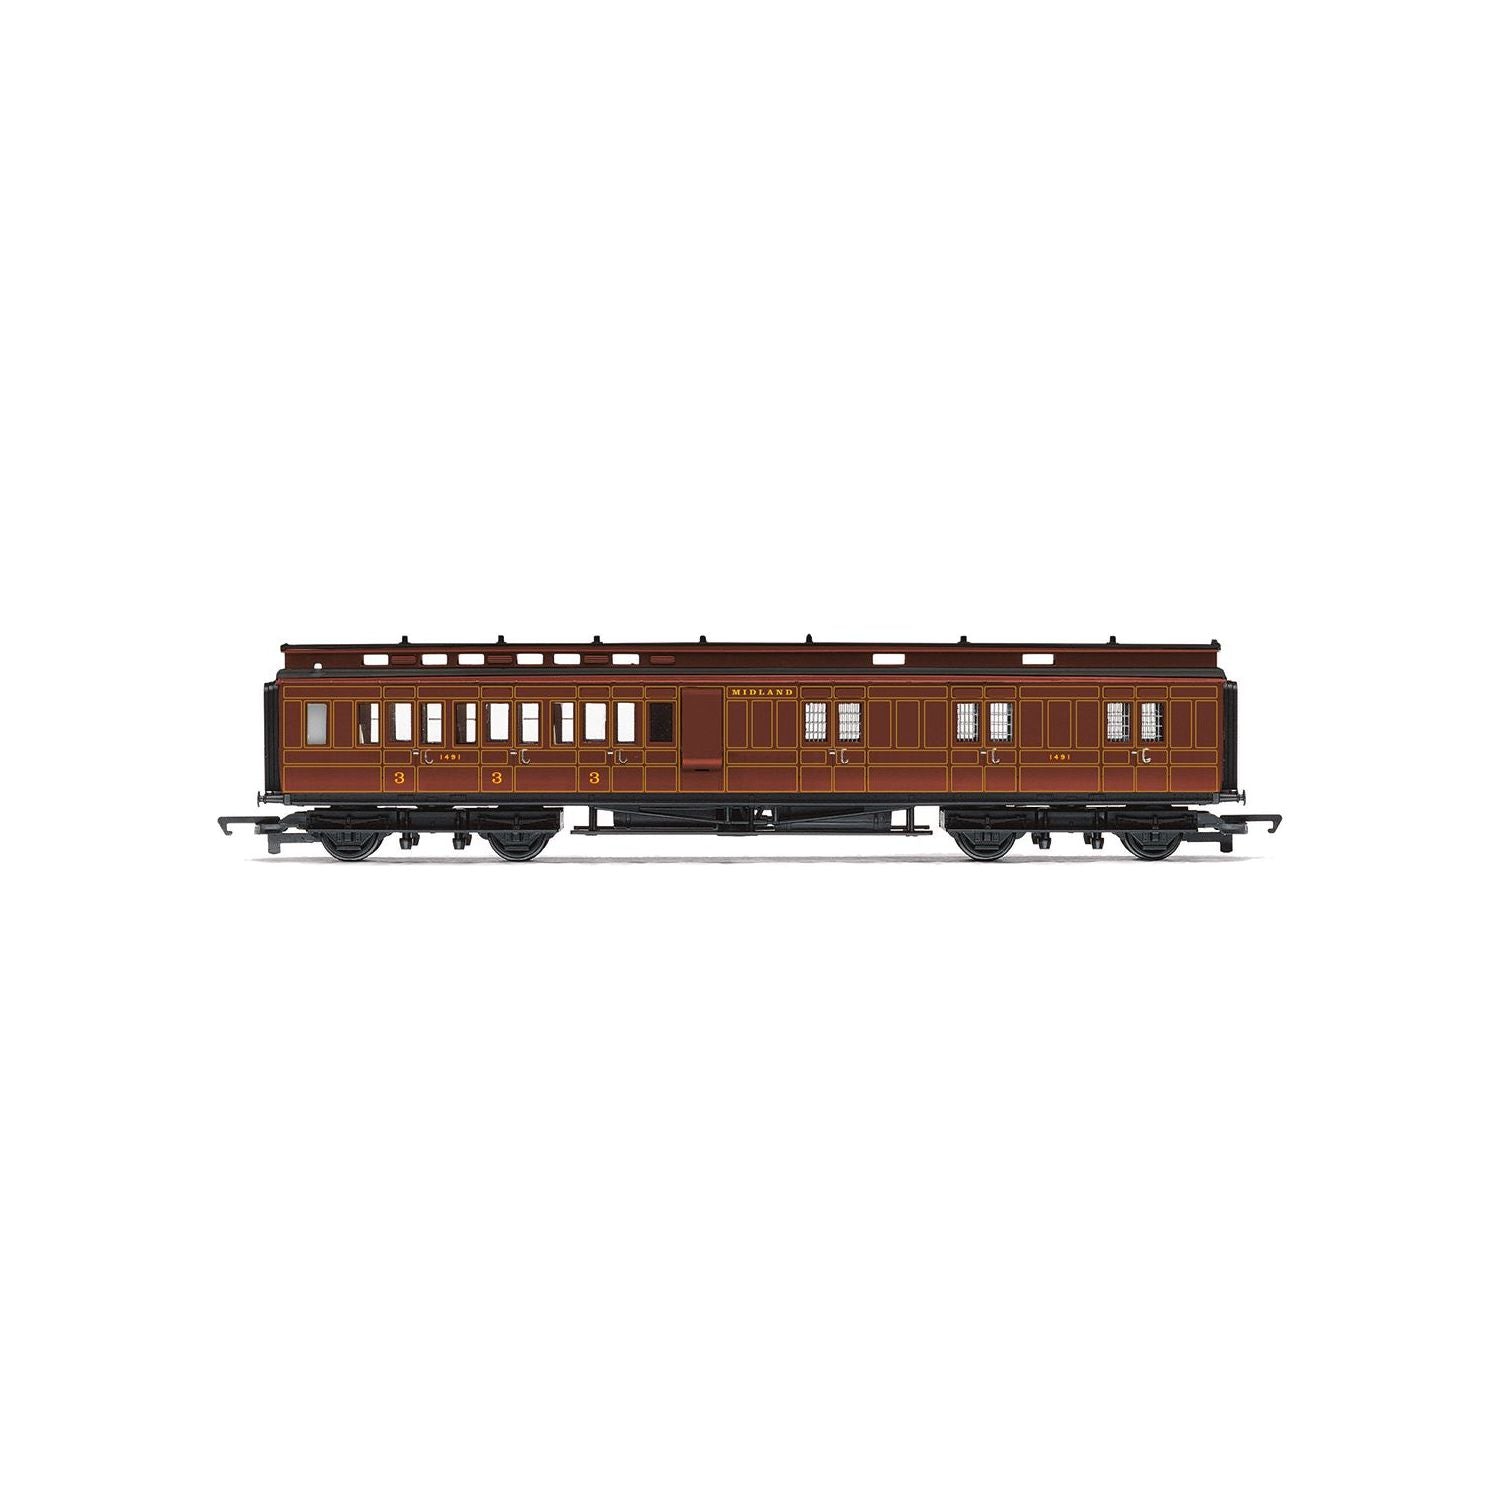 HORNBY RAILROAD MR CLASS 4P COMPOUND TRAIN PACK - ERA 3